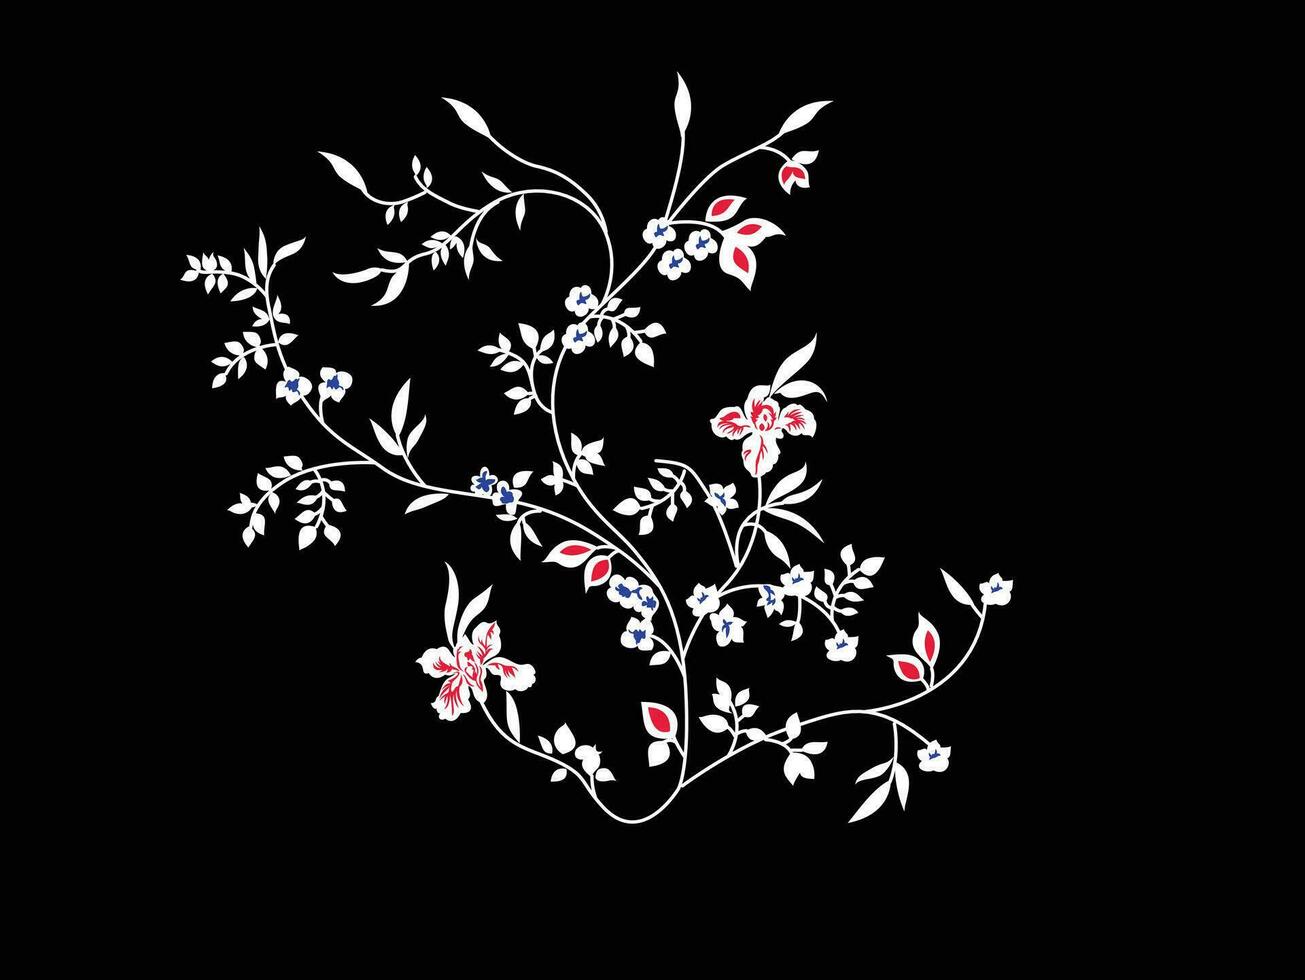 en vit och rosa blomma design på en svart bakgrund vektor